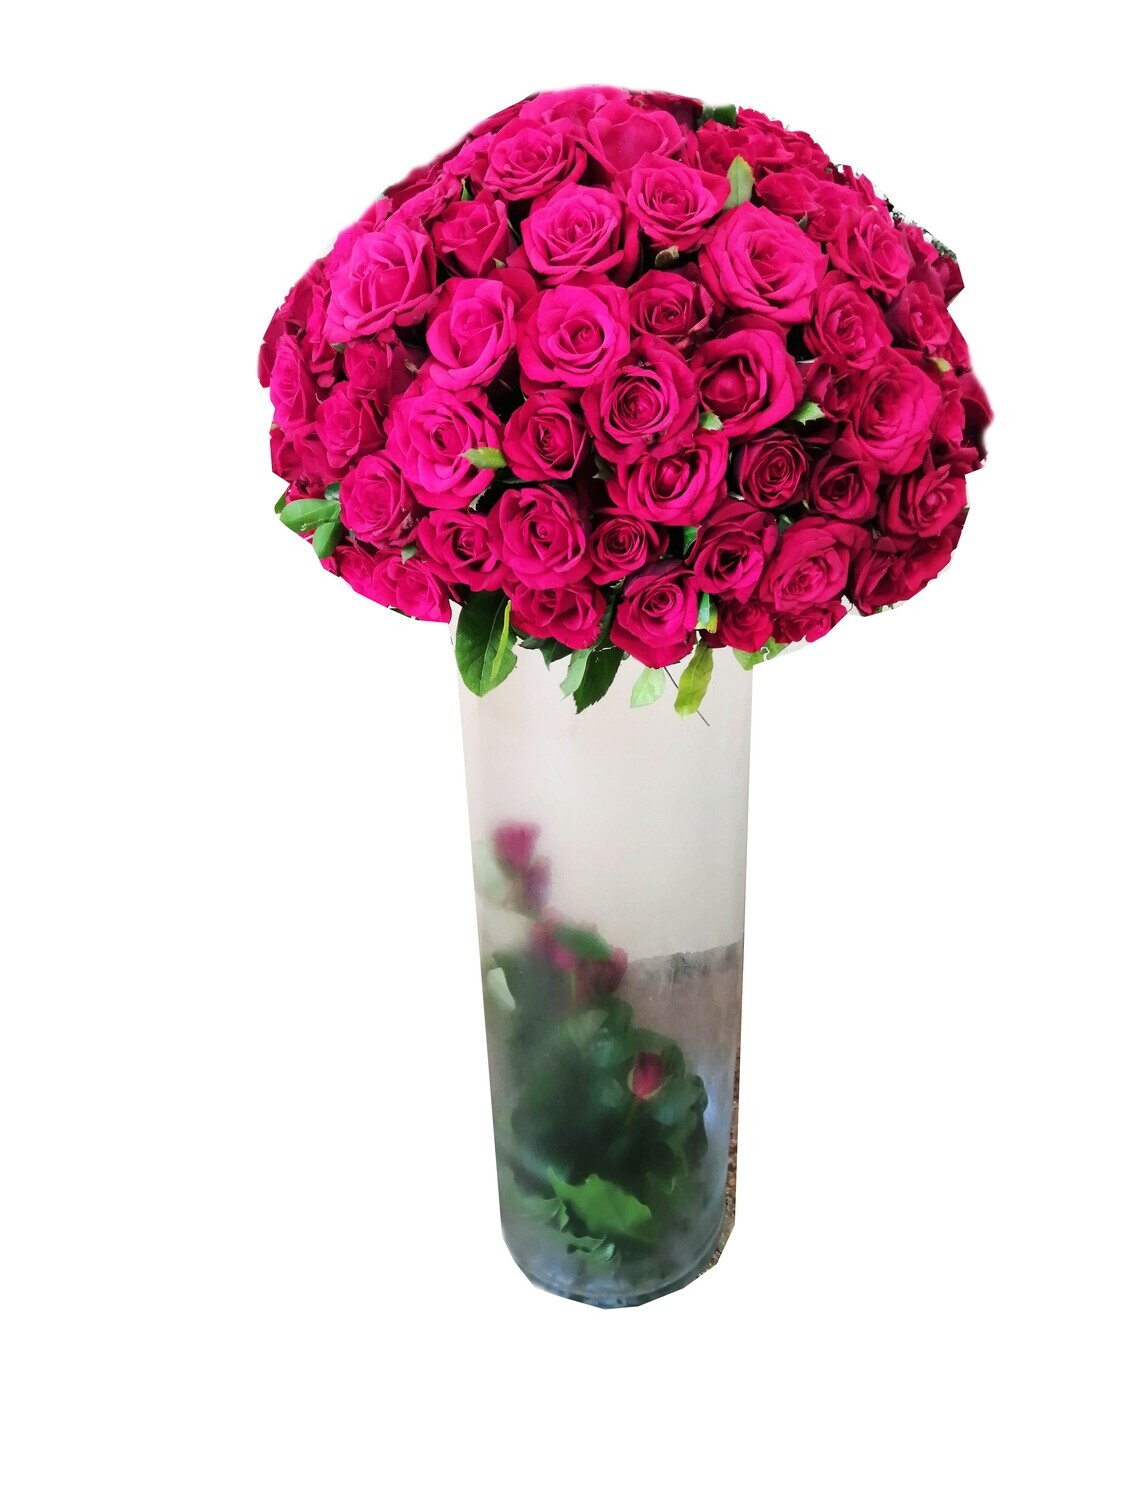 200 roses in Vase Lebanon